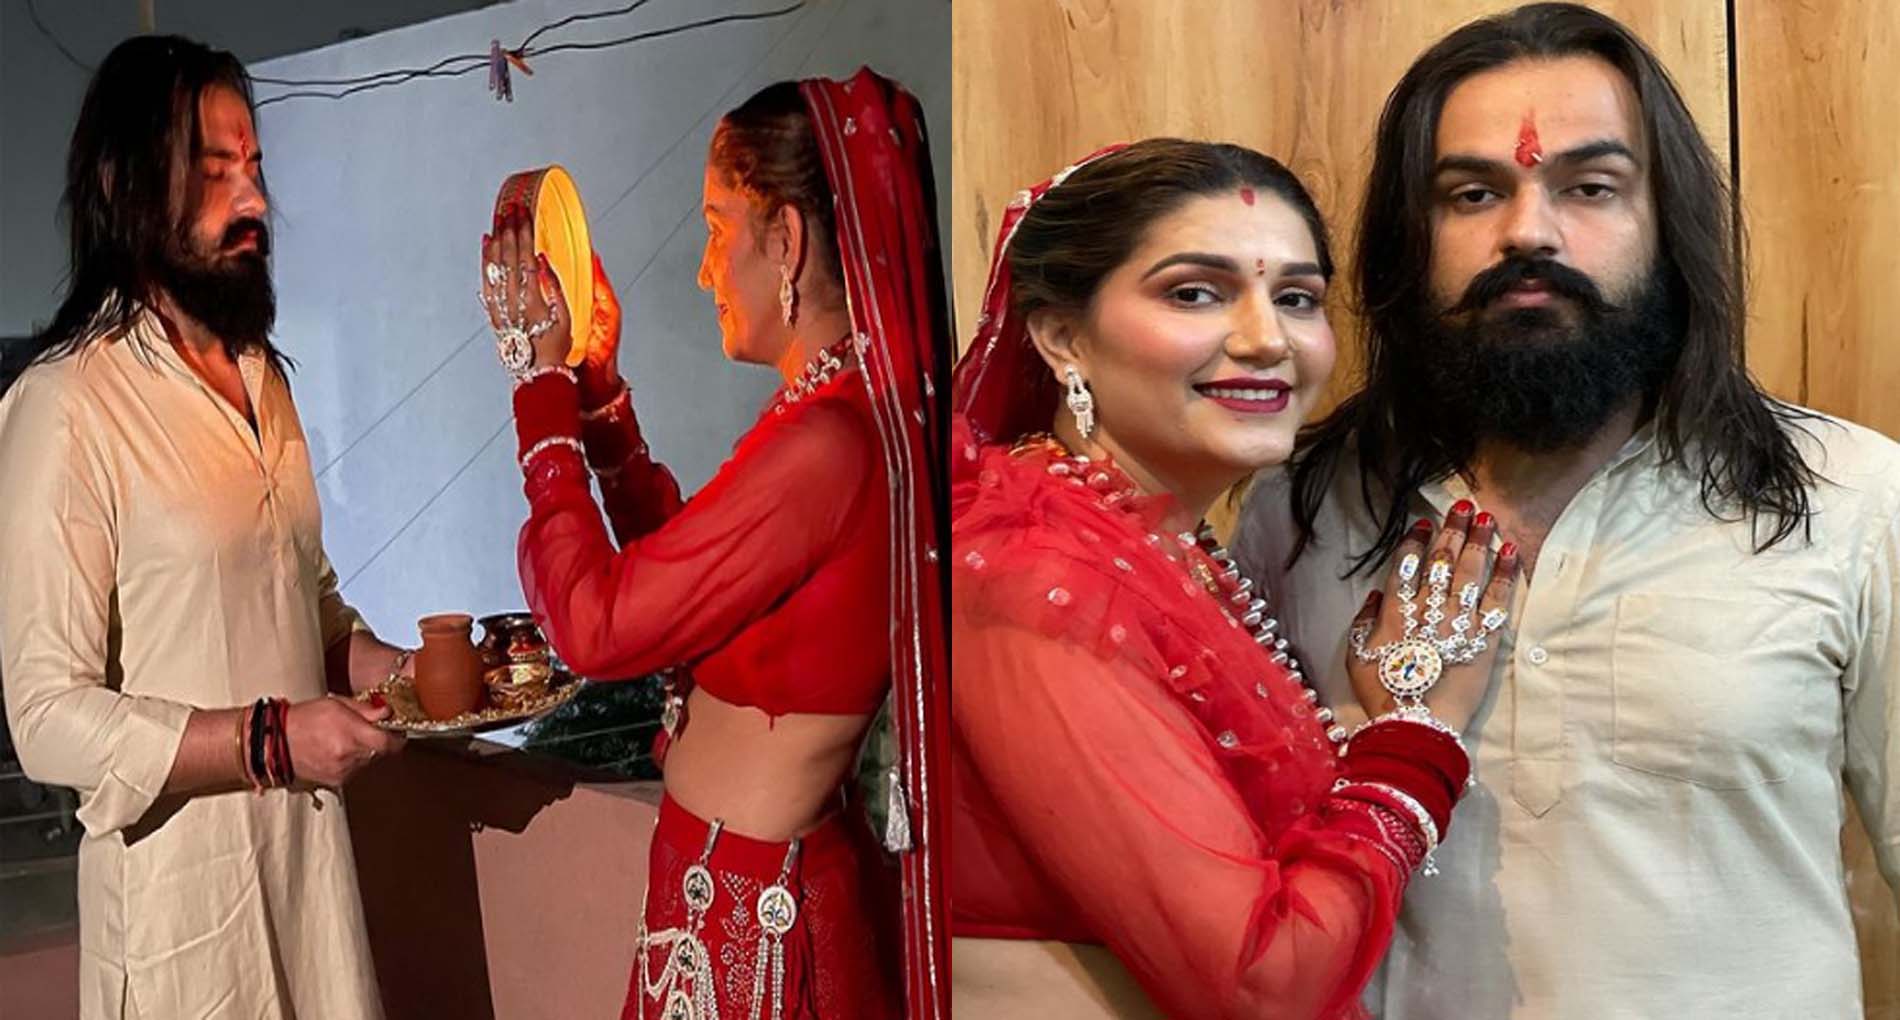 Sapna Choudhary Photos: सपना चौधरी ने पति के साथ शेयर की करवा चौथ कीं PHOTOS!